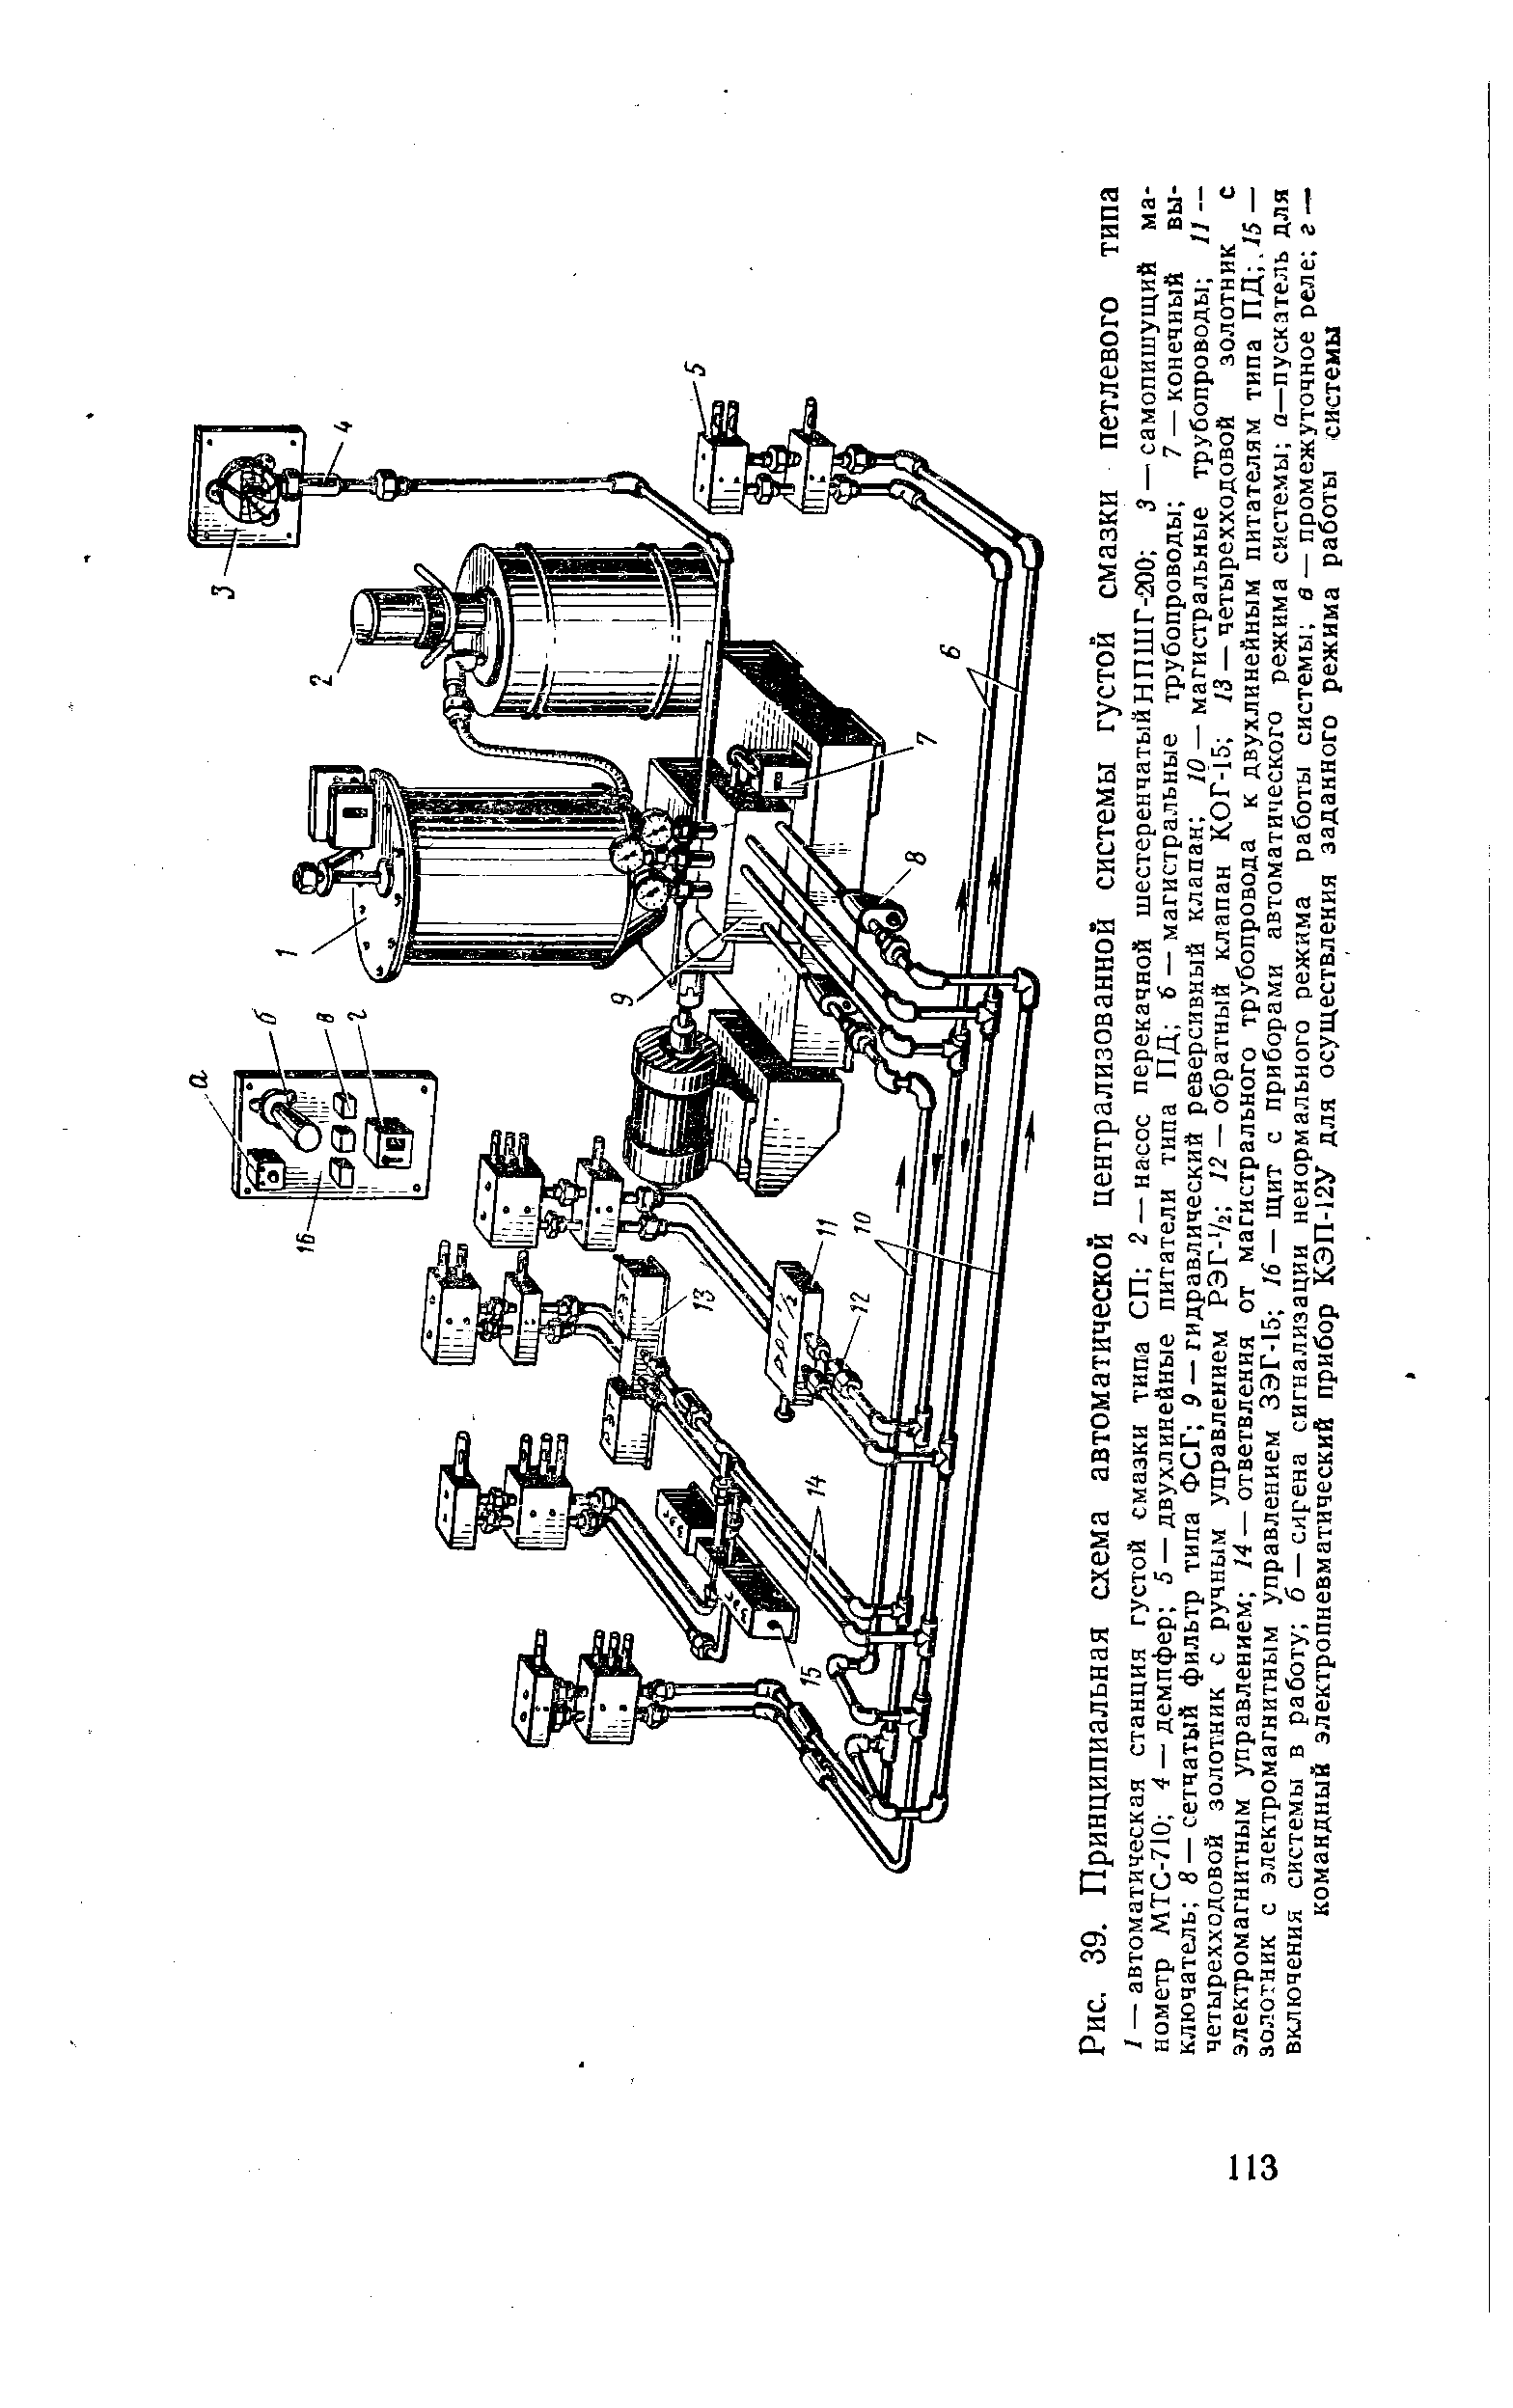 Рис. 39. Принципиальная схема автоматической централизованной системы густой смазки петлевого типа
